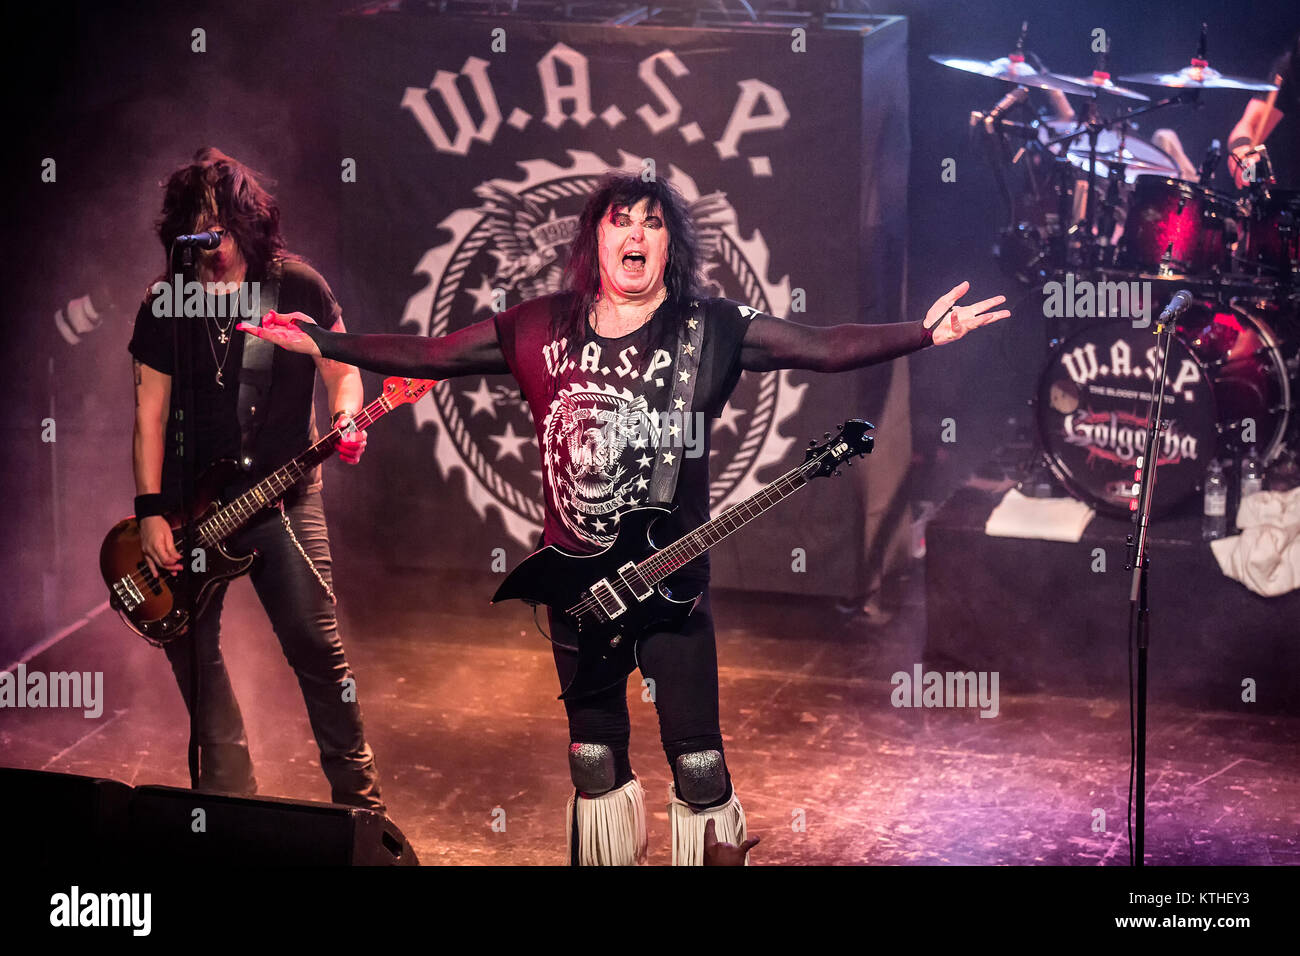 Le Glam metal américain W.A.S.P. bande effectue un concert live à la scène de l'Union européenne à Oslo. Ici la bande originale du dernier membre de la bande, le chanteur auteur-compositeur-interprète, Blackie Lawless est vu sur scène. La Norvège, 14/10 2015. Banque D'Images